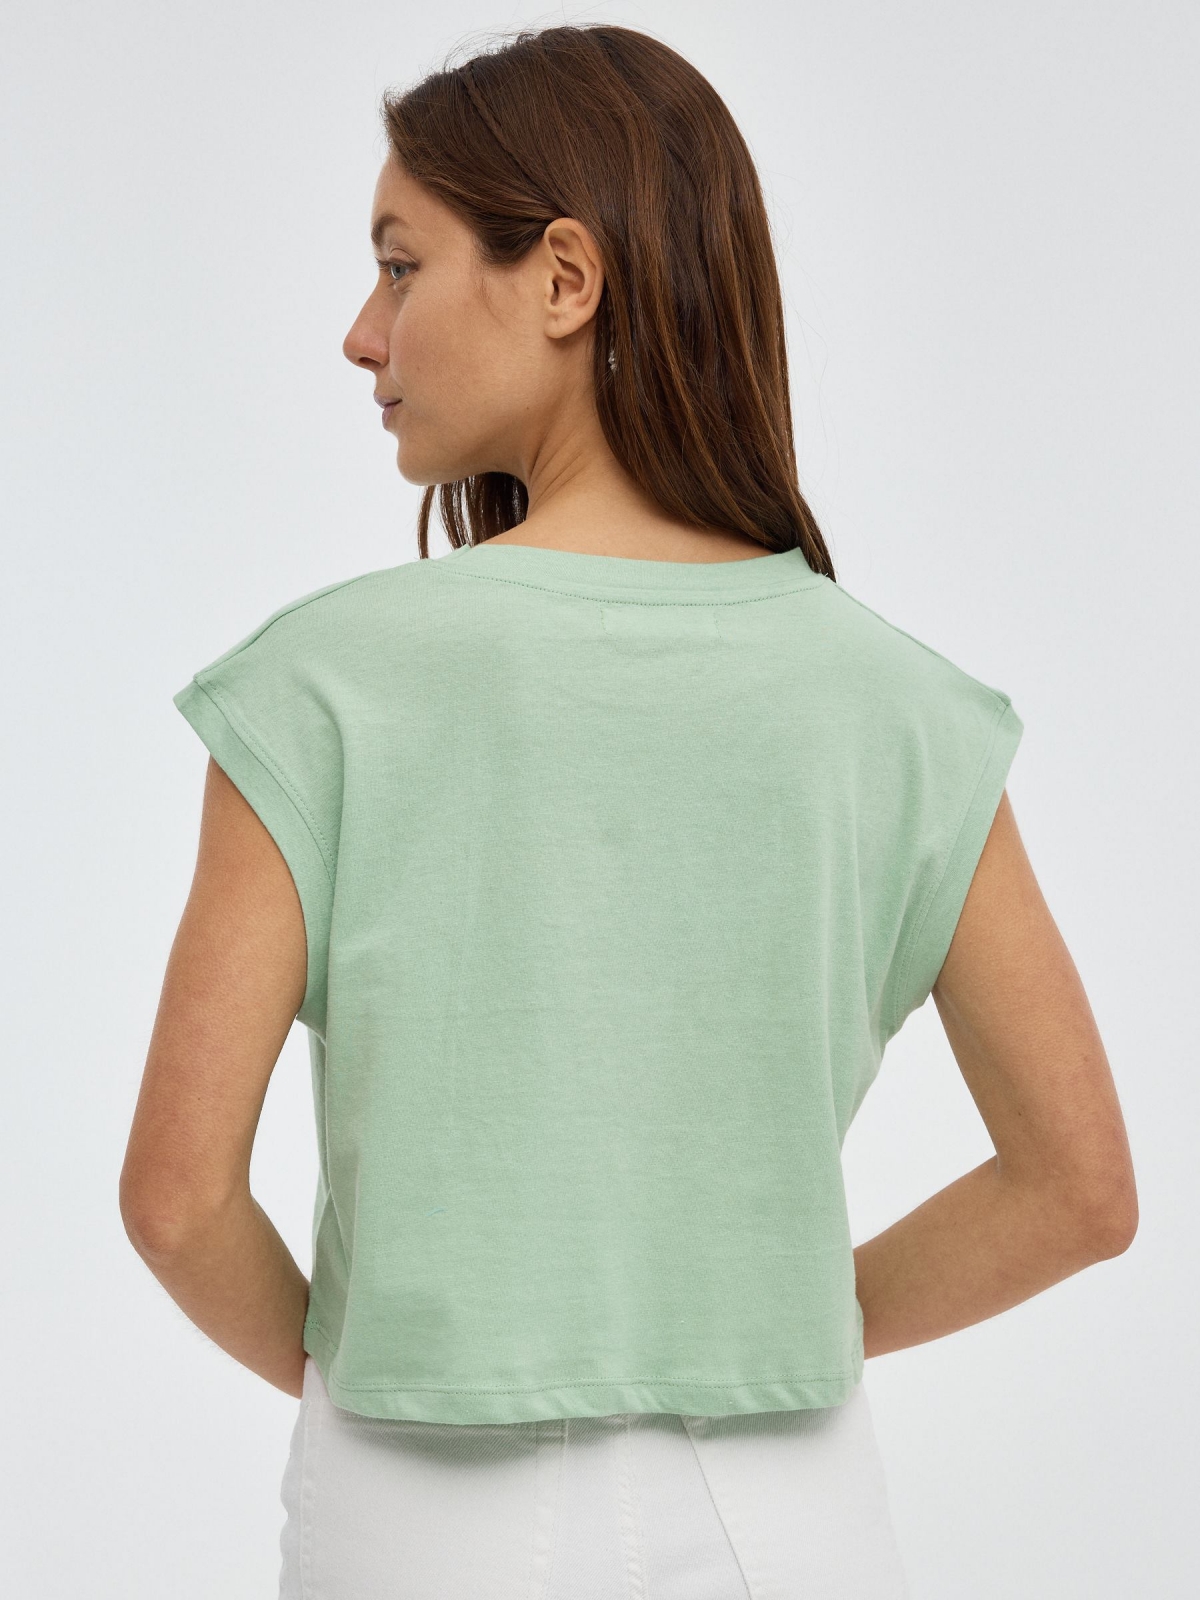 T-Shirt de Kansas City verde claro vista meia traseira